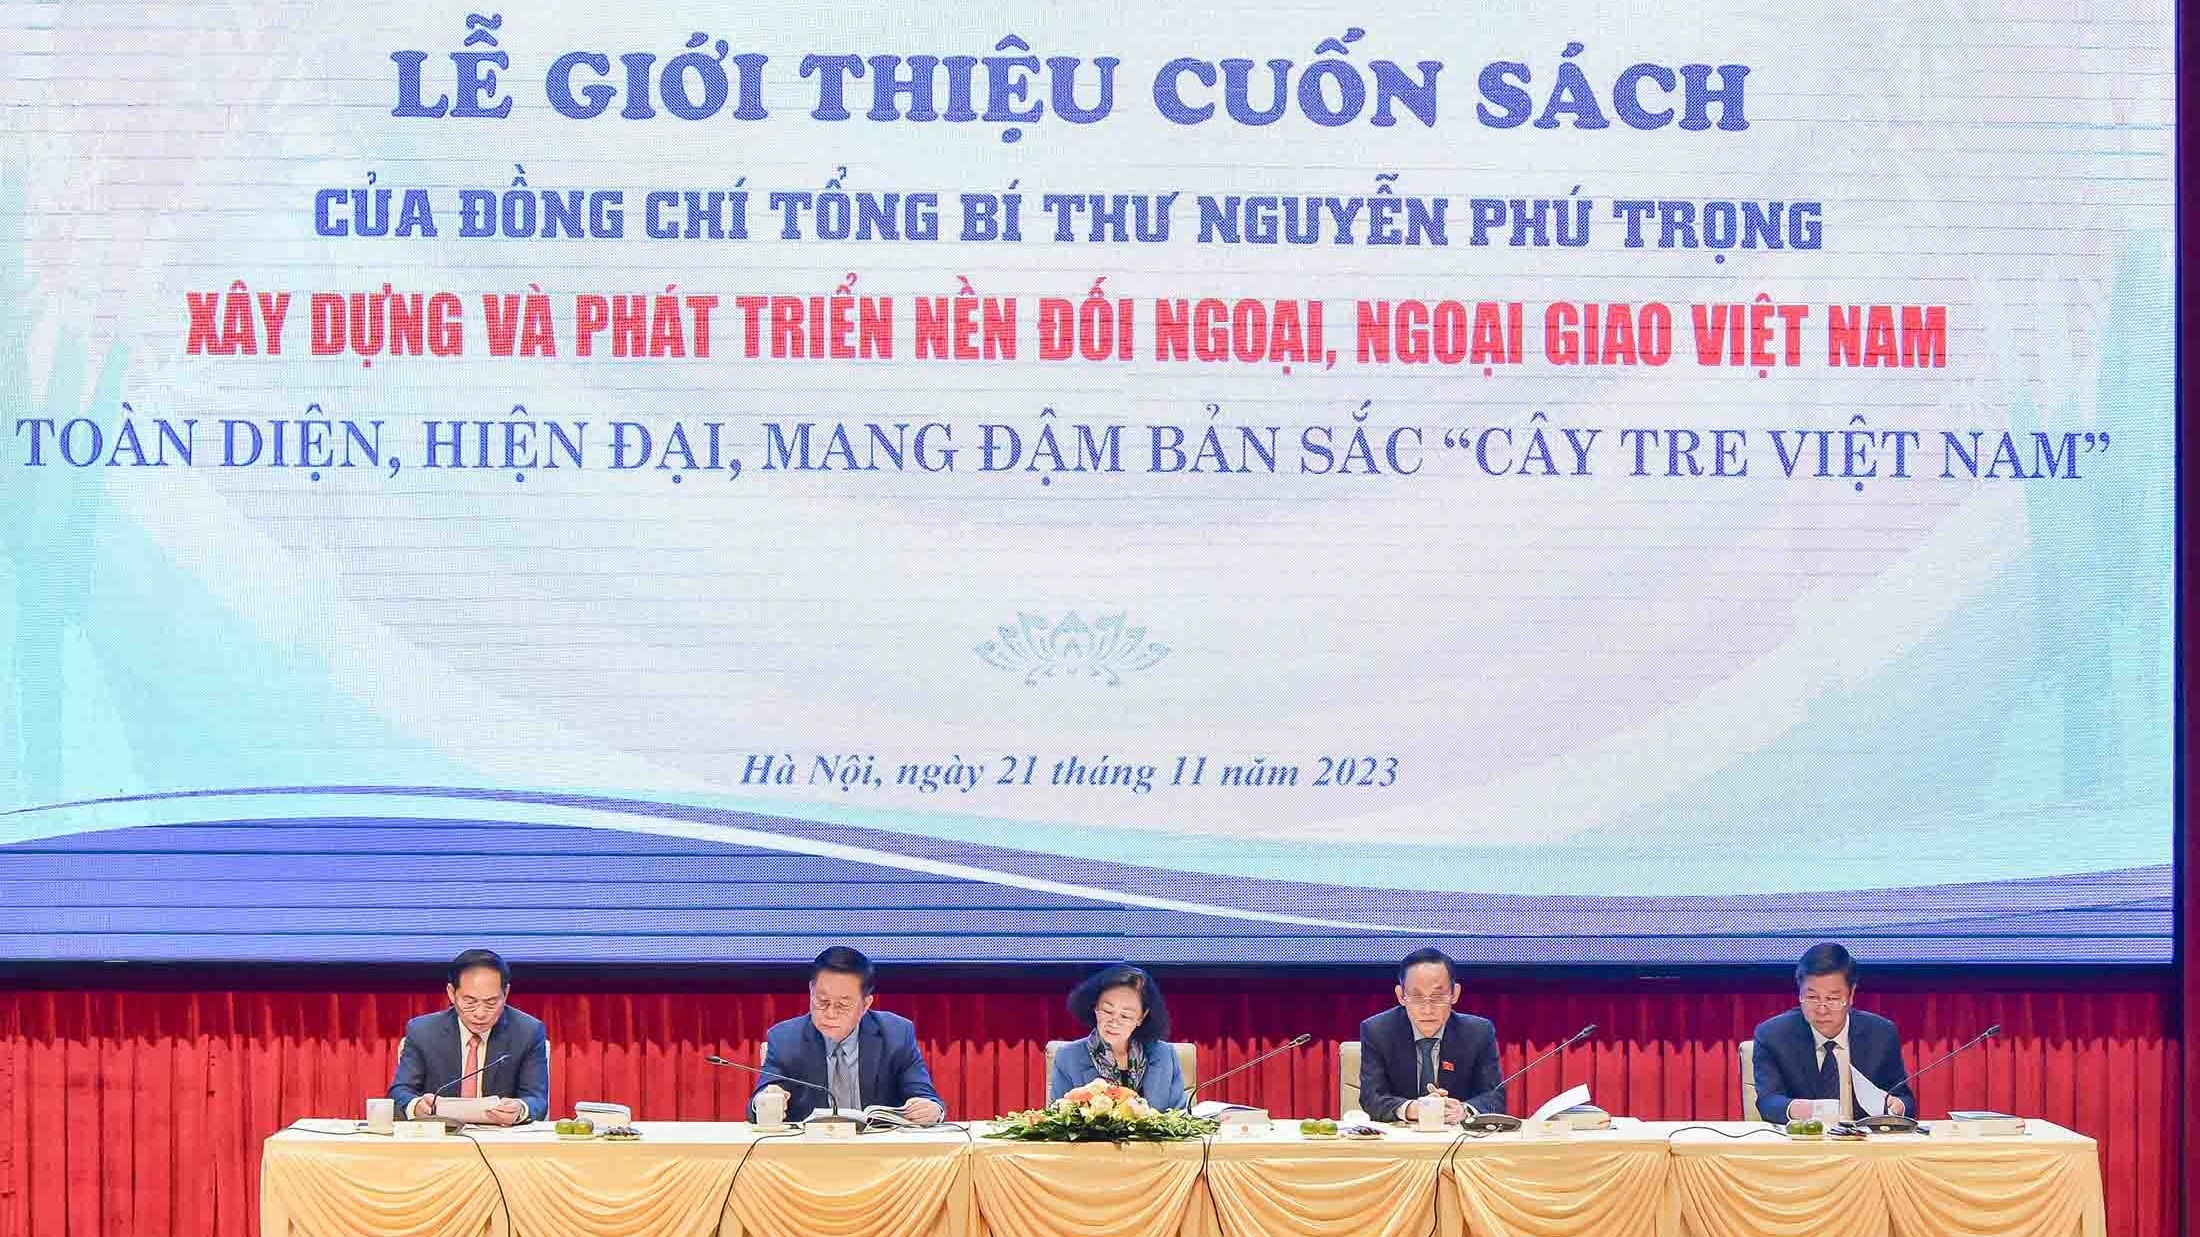 Cuốn sách của Tổng Bí thư Nguyễn Phú Trọng là cơ sở quan trọng về lý luận và thực tiễn về công tác đối ngoại trong tình hình mới